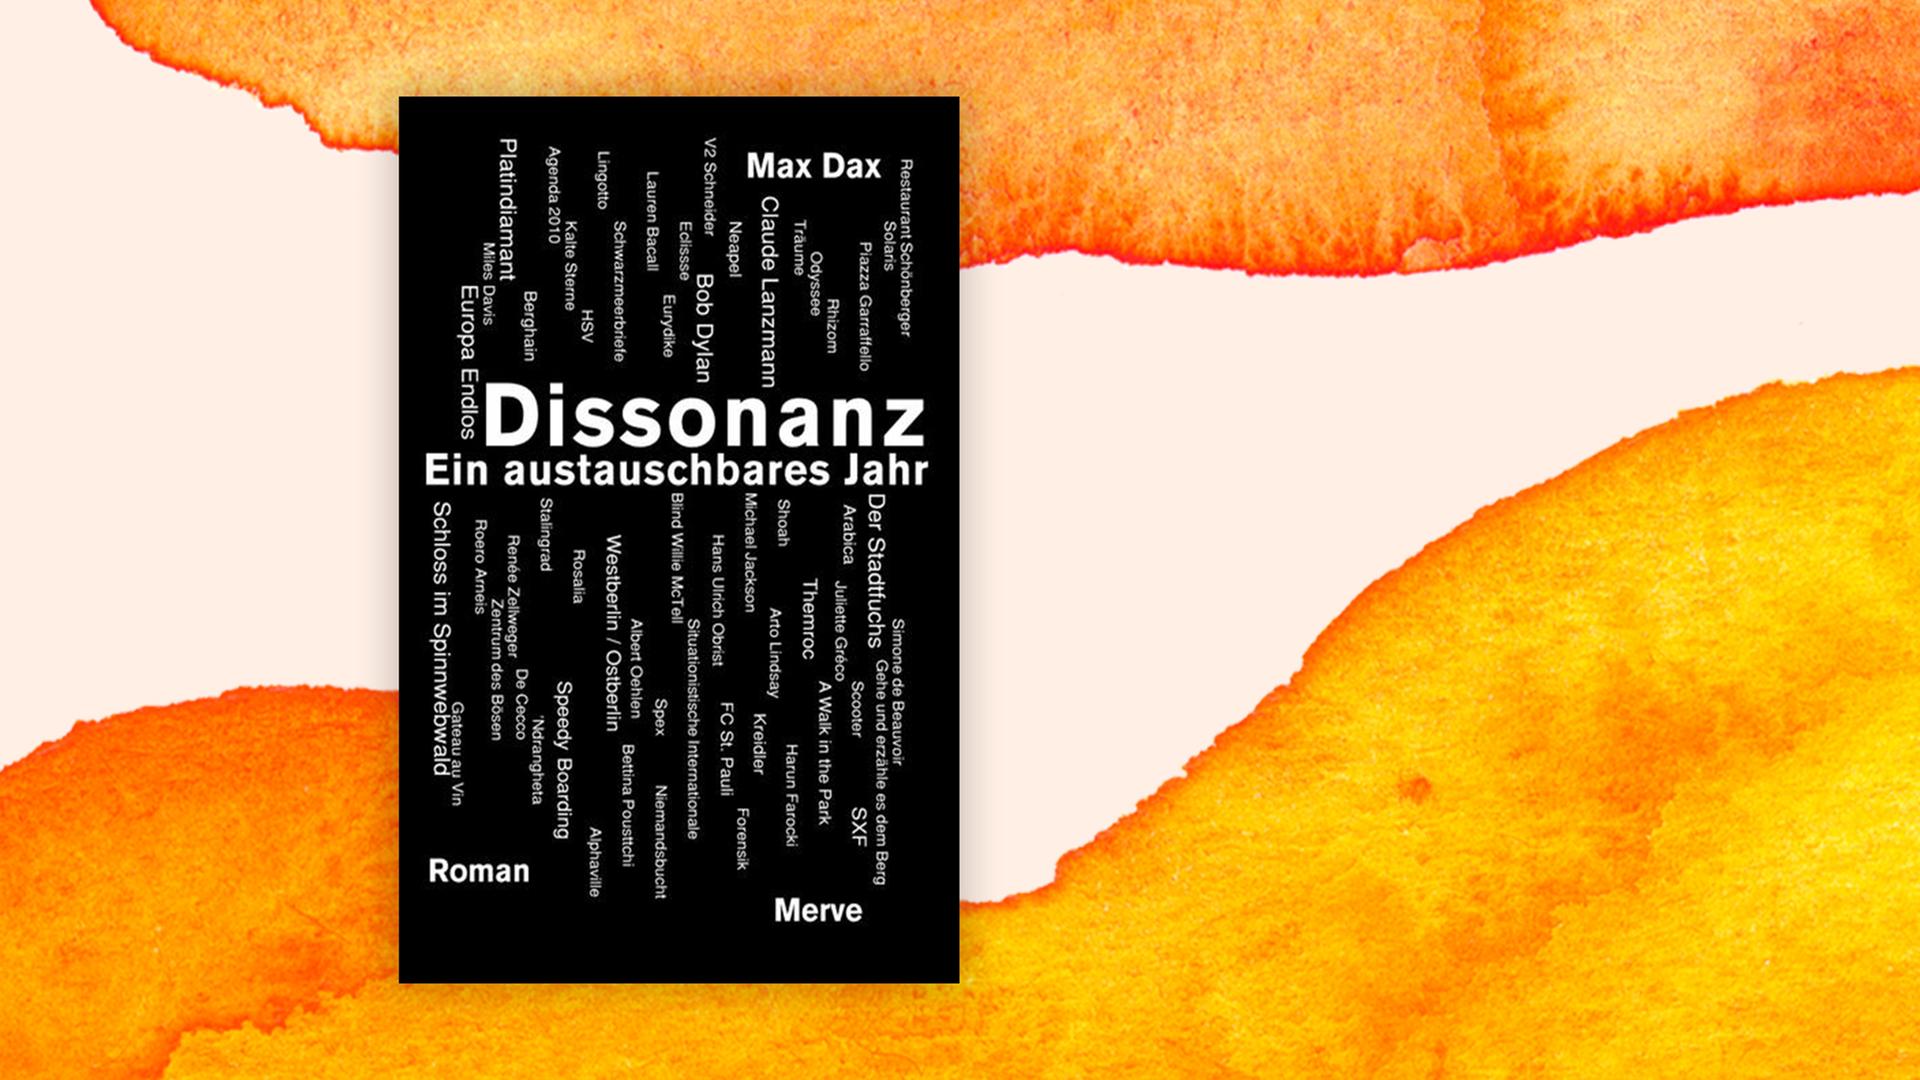 Ein schwarzes Cover, auf dem groß das Wort "Dissonanz" steht